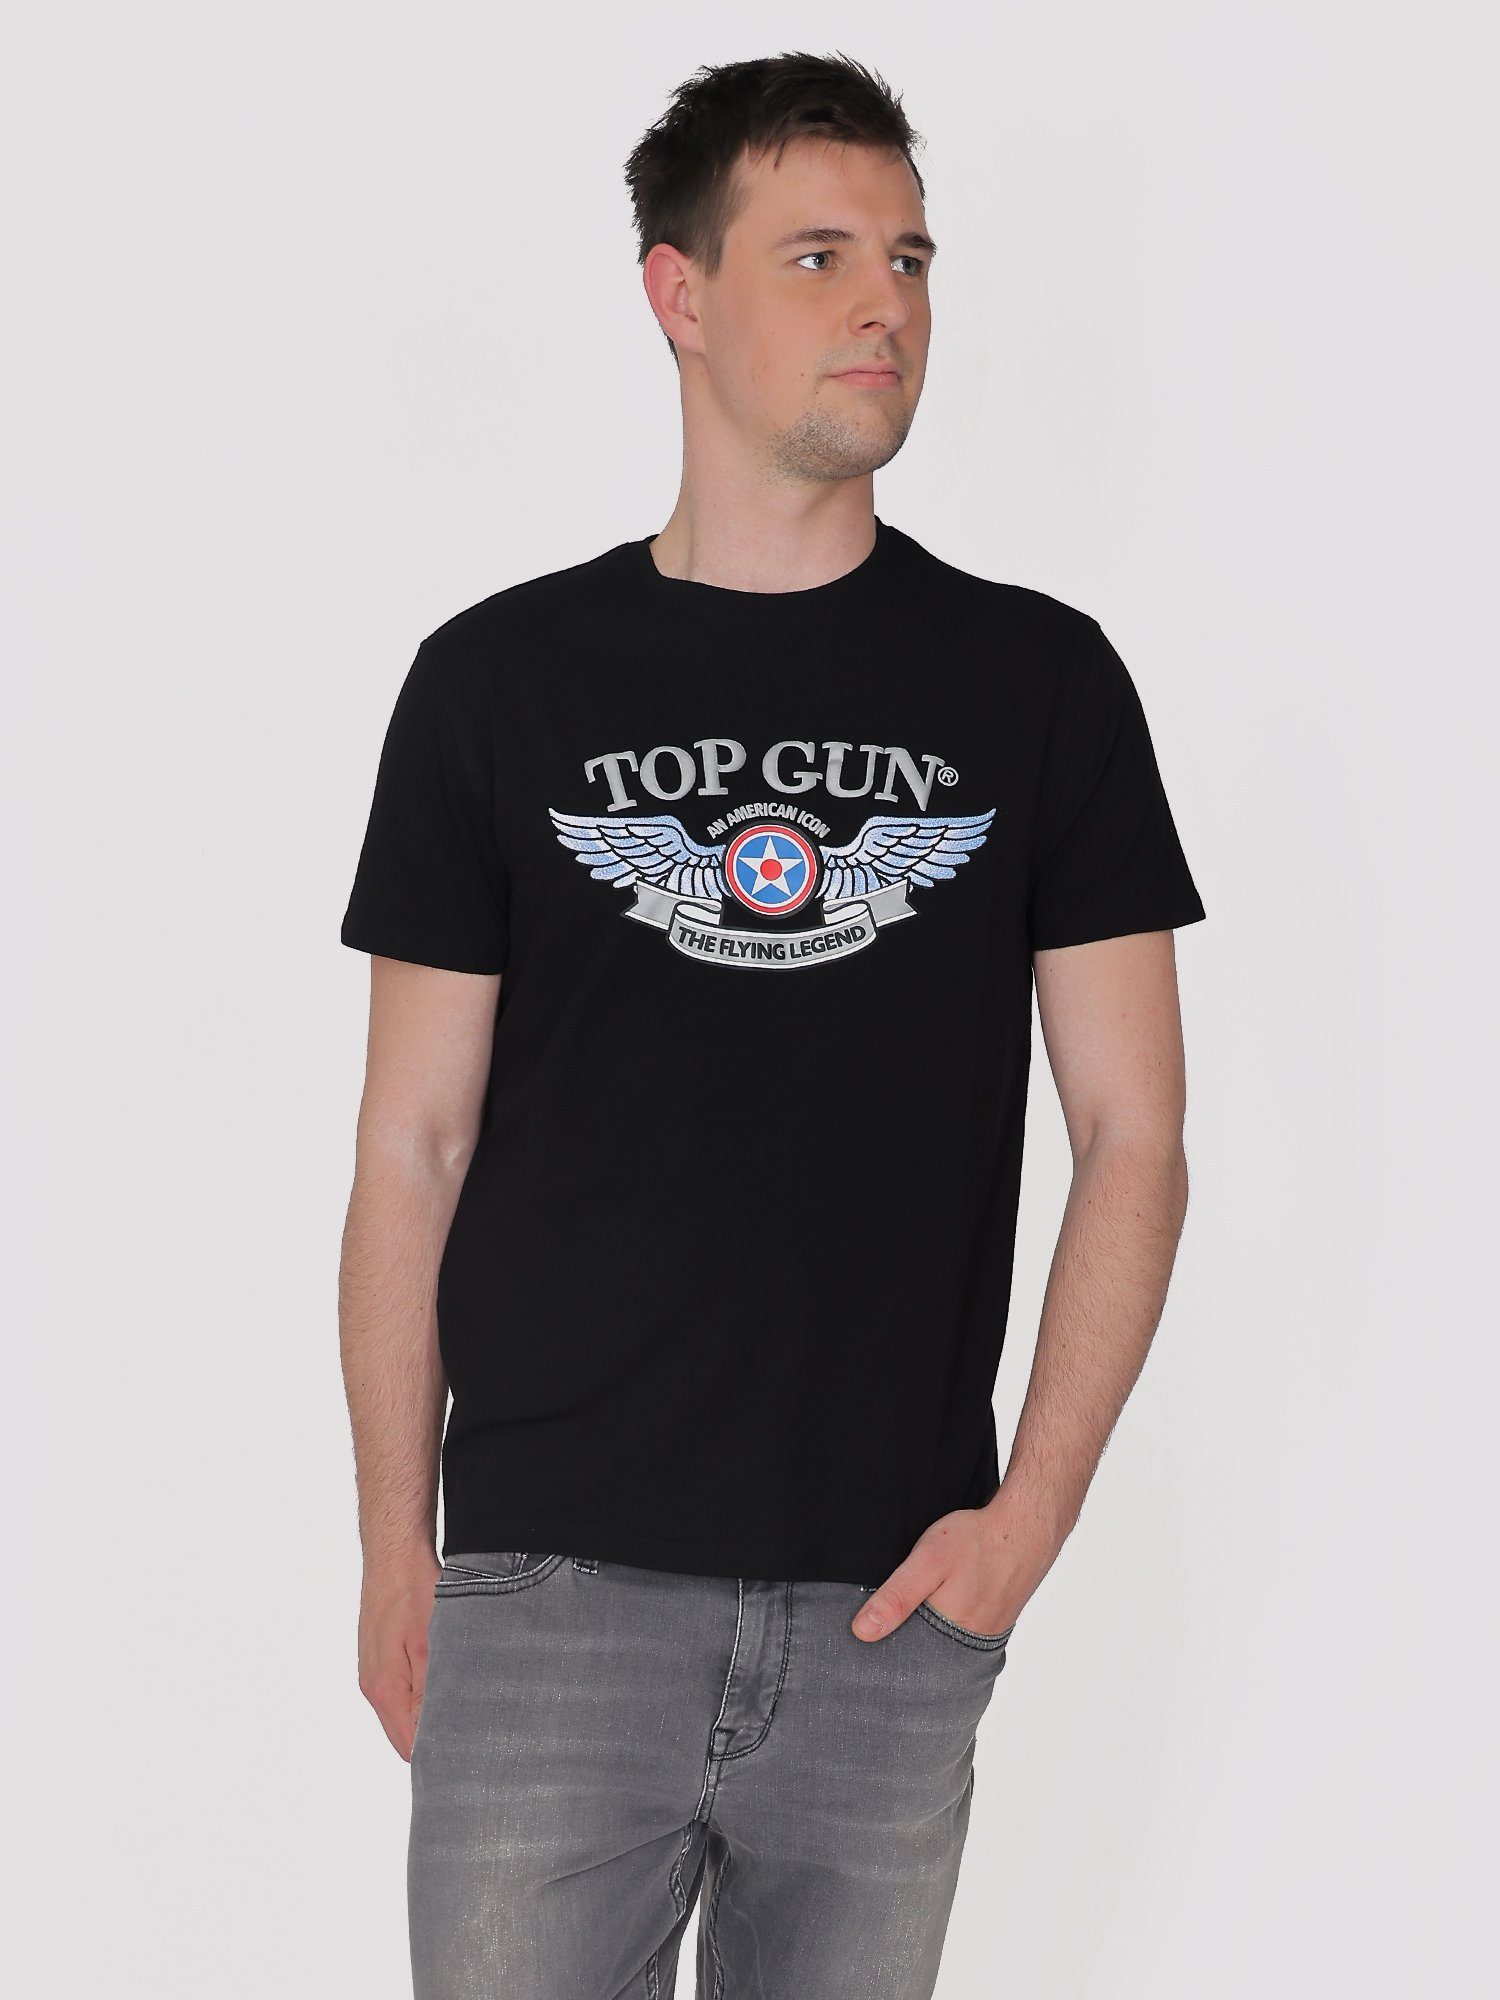 GUN T-Shirt TG22031 TOP